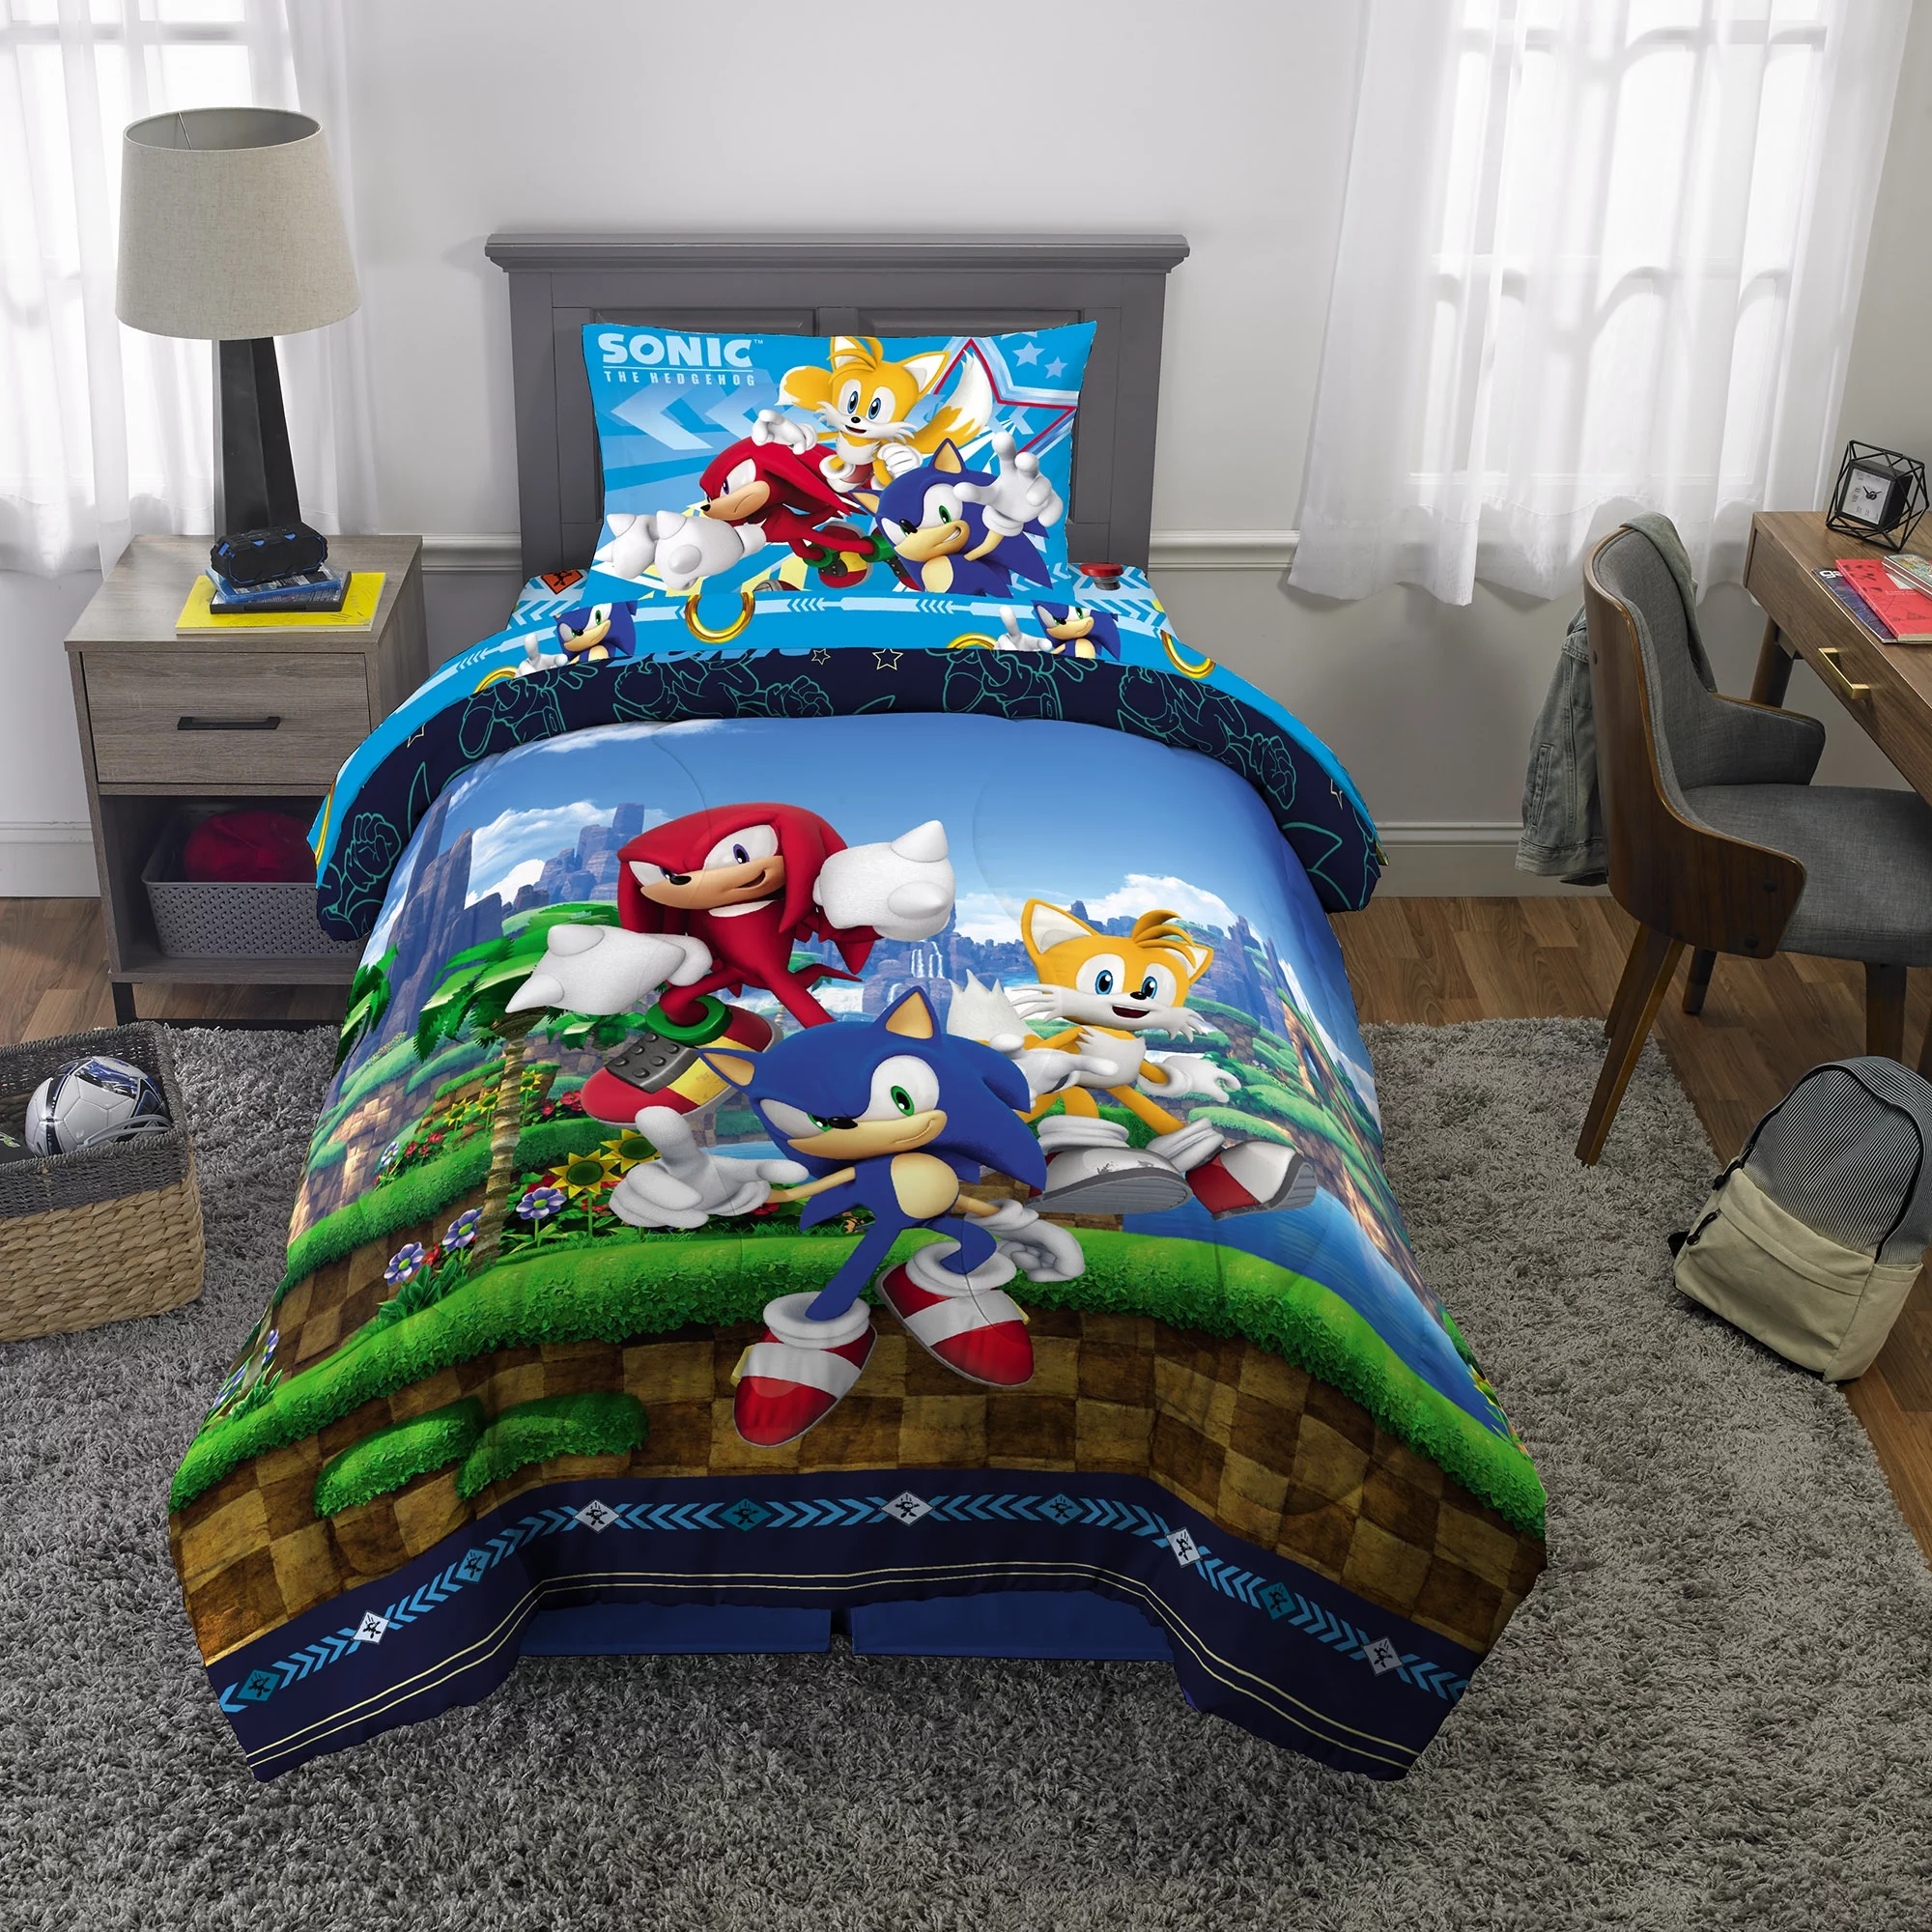 Sonic the Hedgehog Kids Microfiber Bed-in-a-Bag Bedding Bundle Set, Comforter and Sheets, Blue